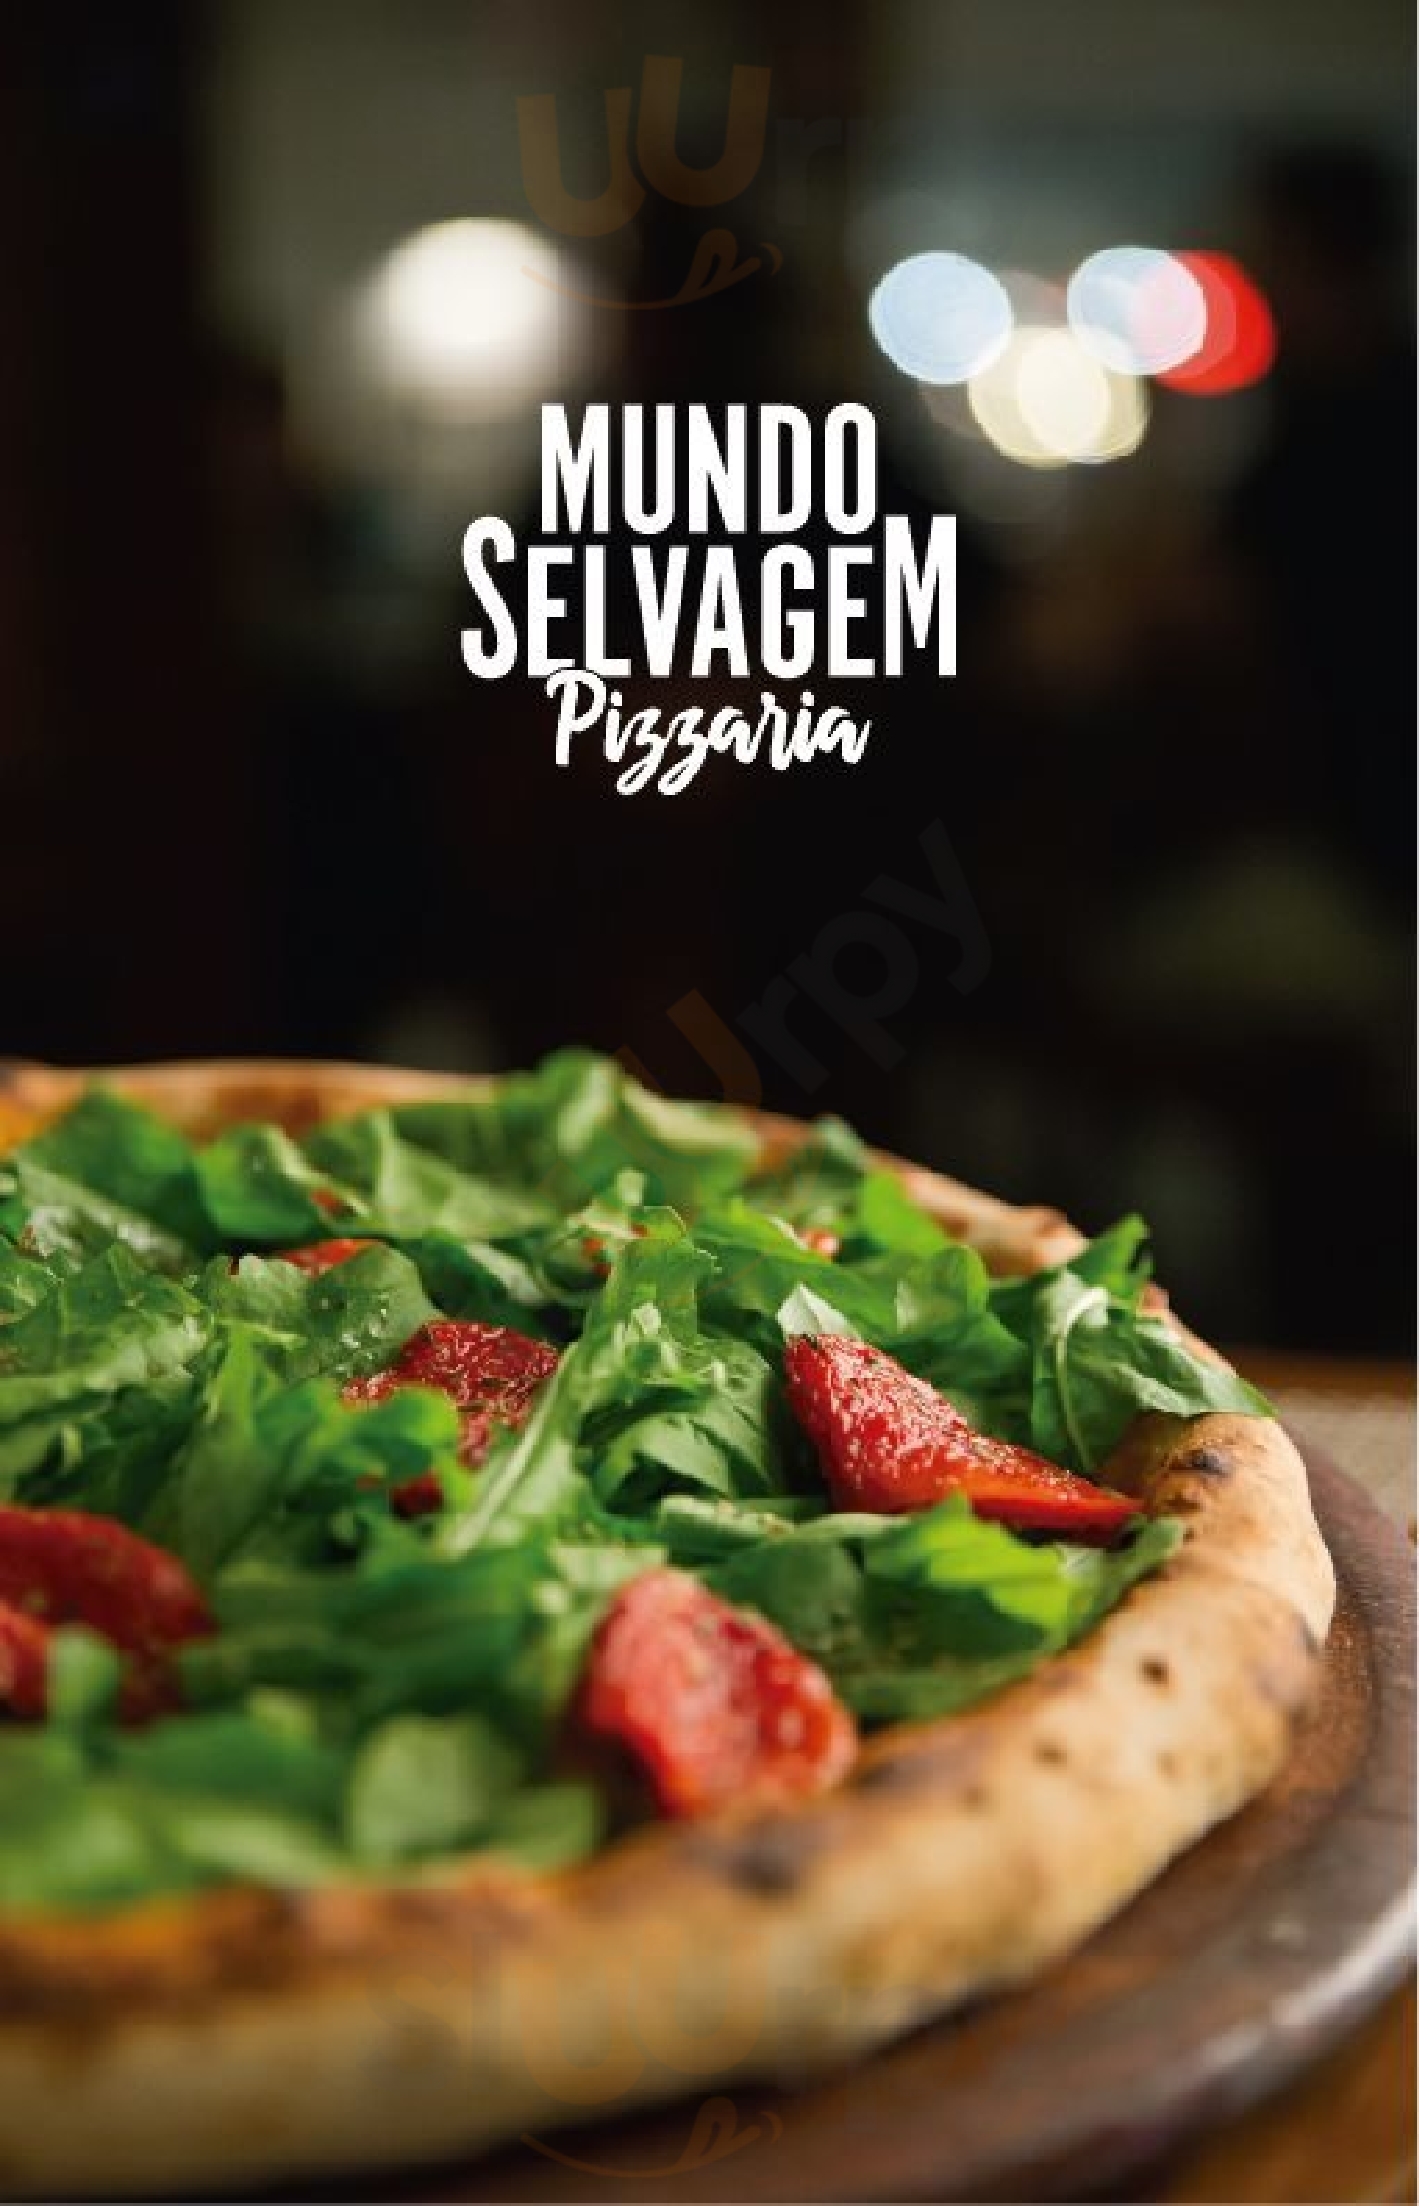 Mundo Selvagem Pizza Balneário Camboriú Menu - 1